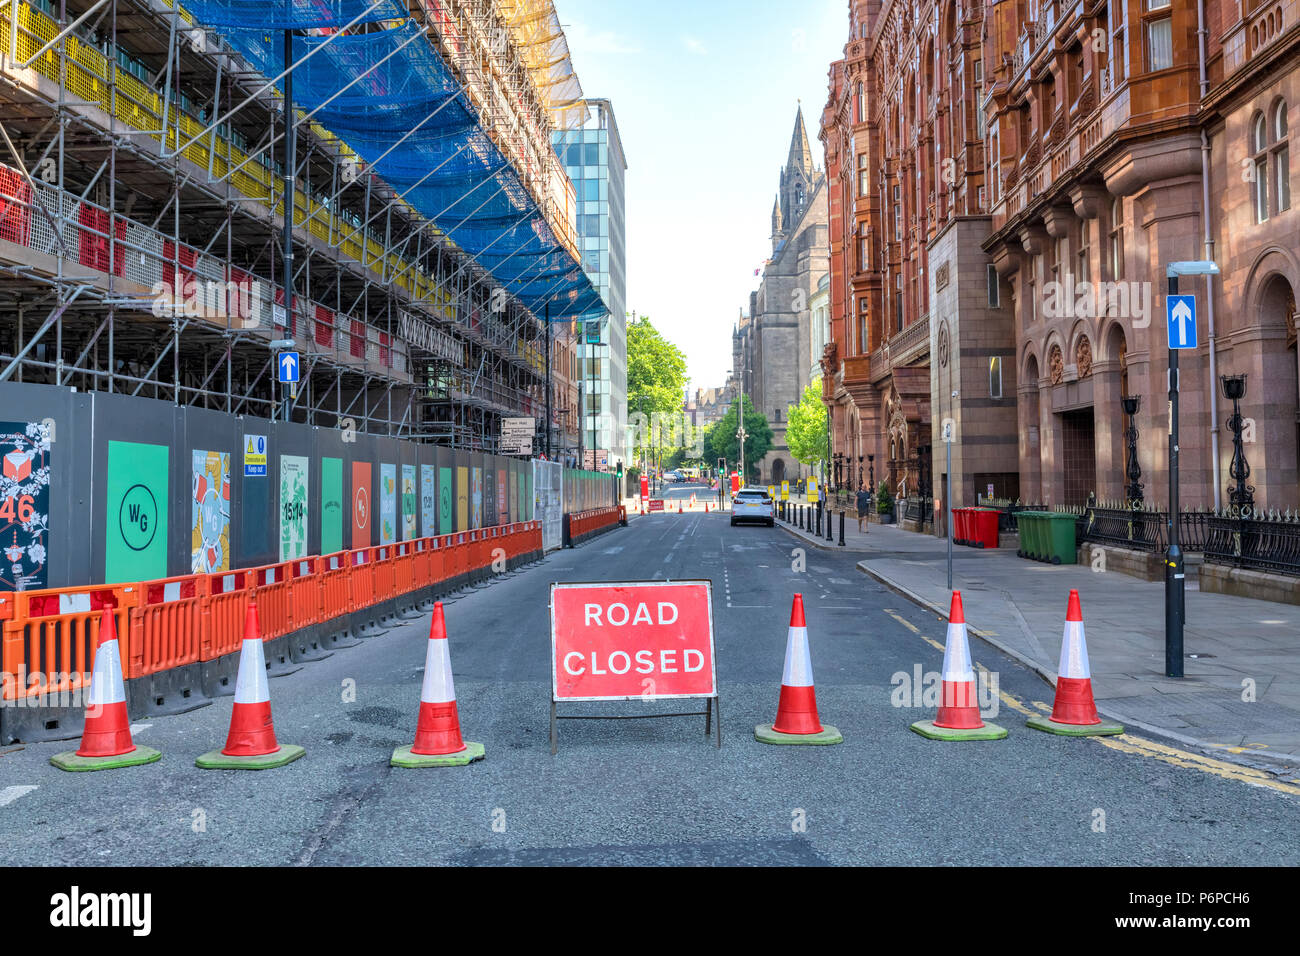 Coni e una strada chiusa segno indicano una chiusa fuori strada nel centro della città di Manchester, UK. Foto Stock